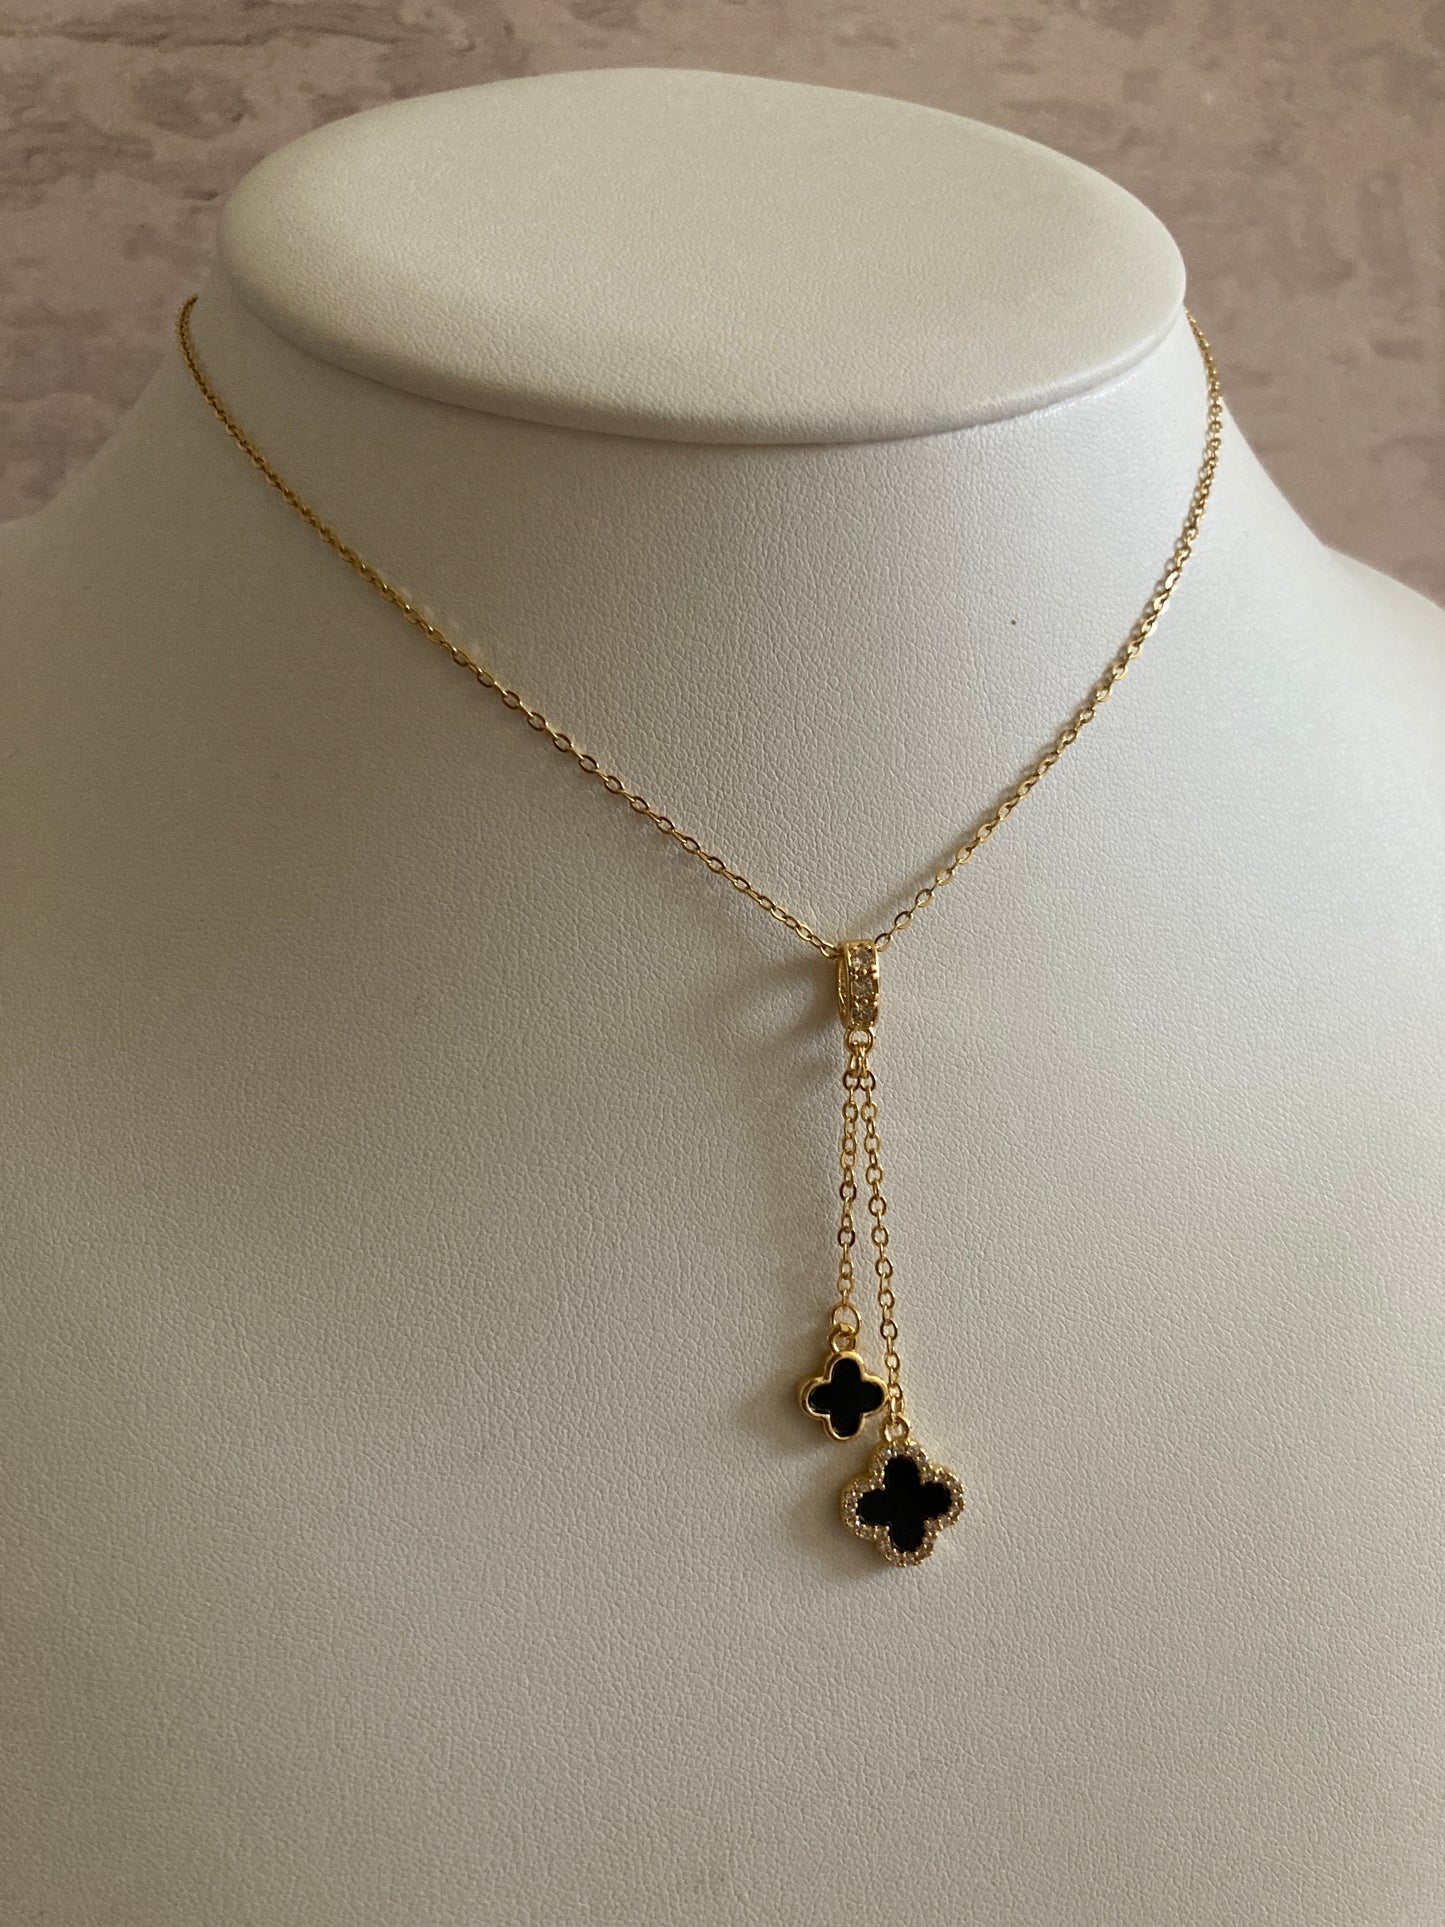 Four Leaf Clover 18K Gold Plated Pendant Necklace (ST820) (Black)